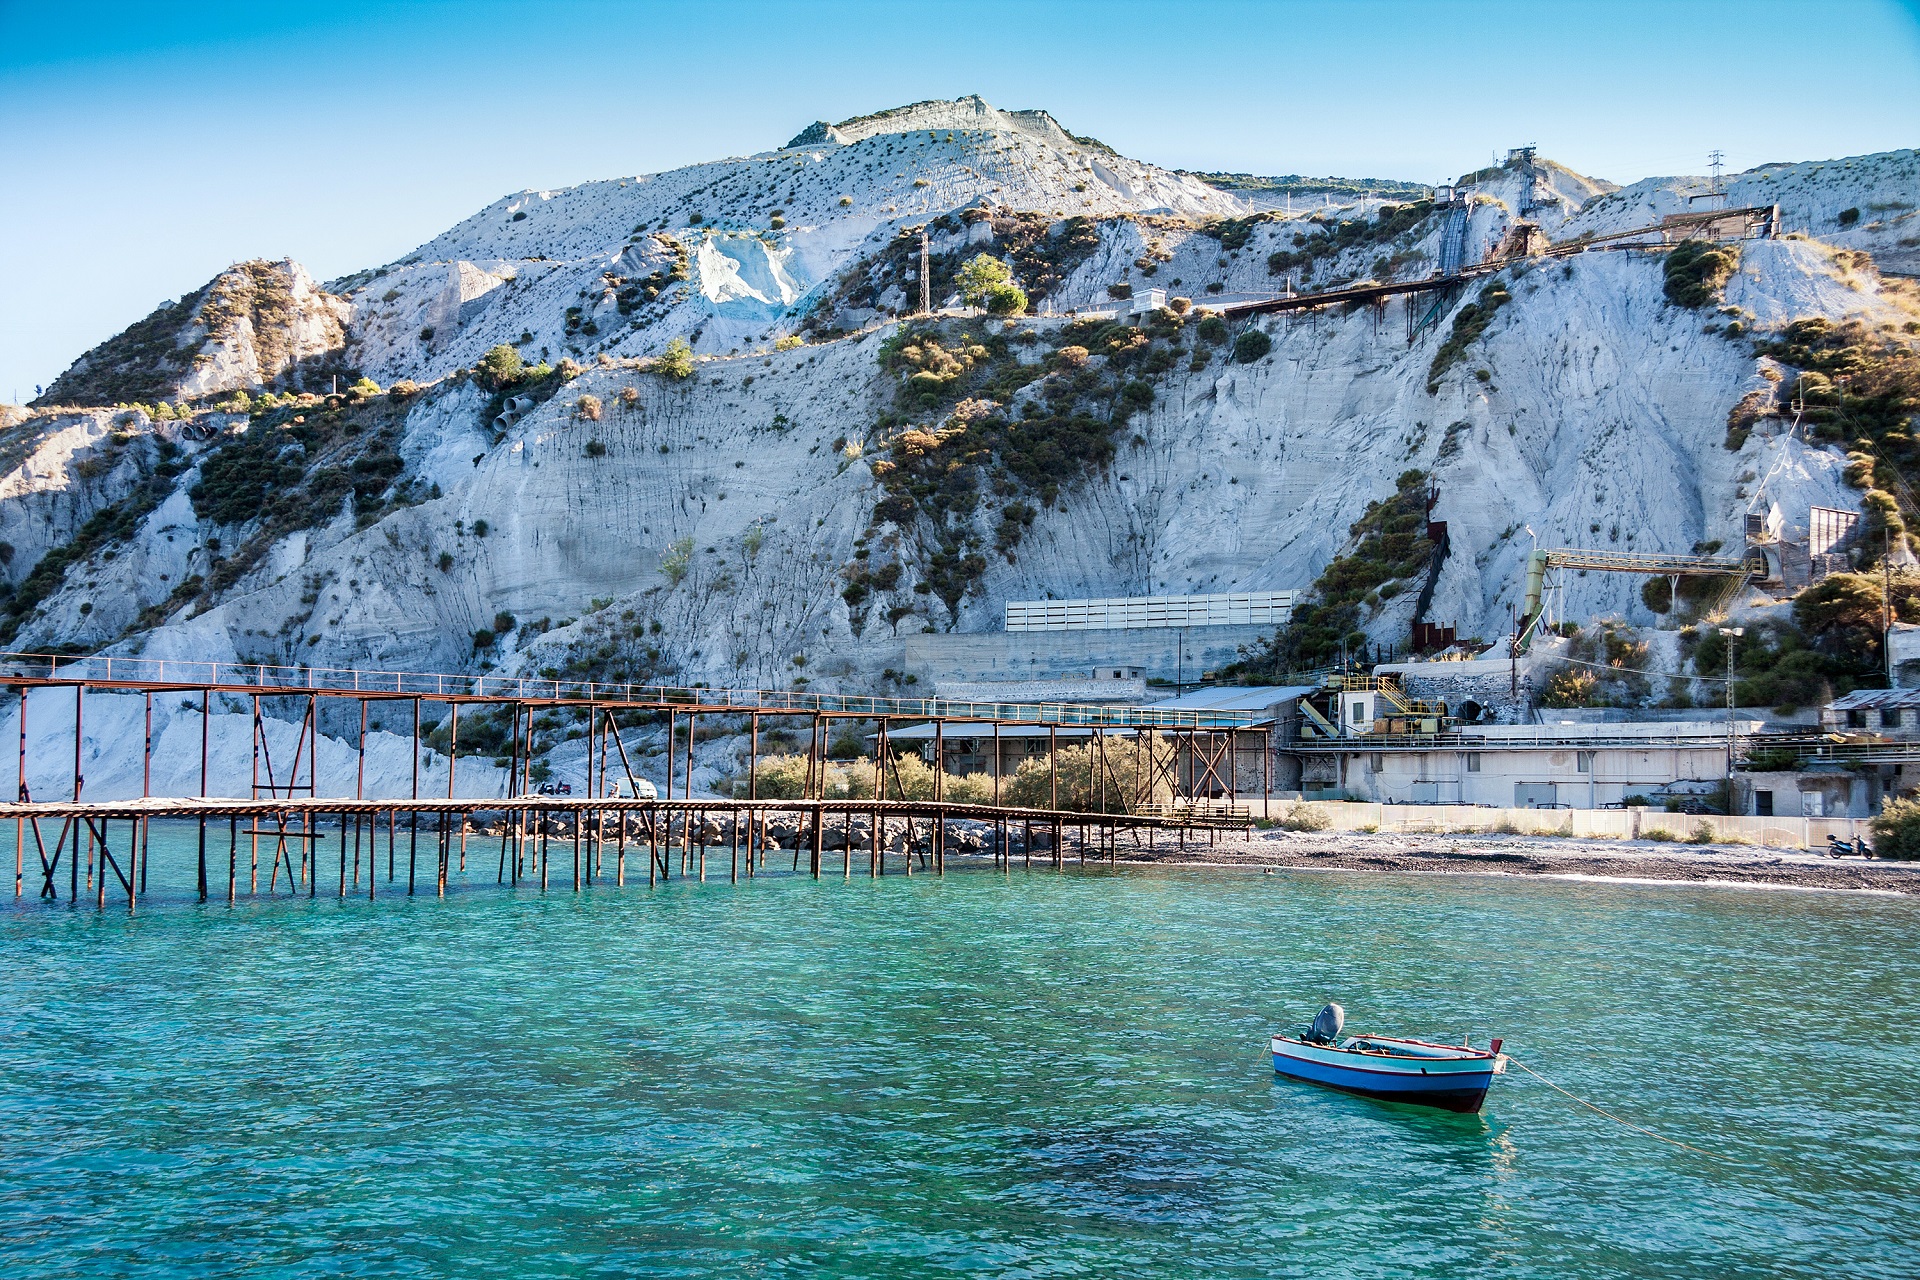 Die Küste von Lipari besteht aus weißem Gestein, das türkise Meer zu Füßen.